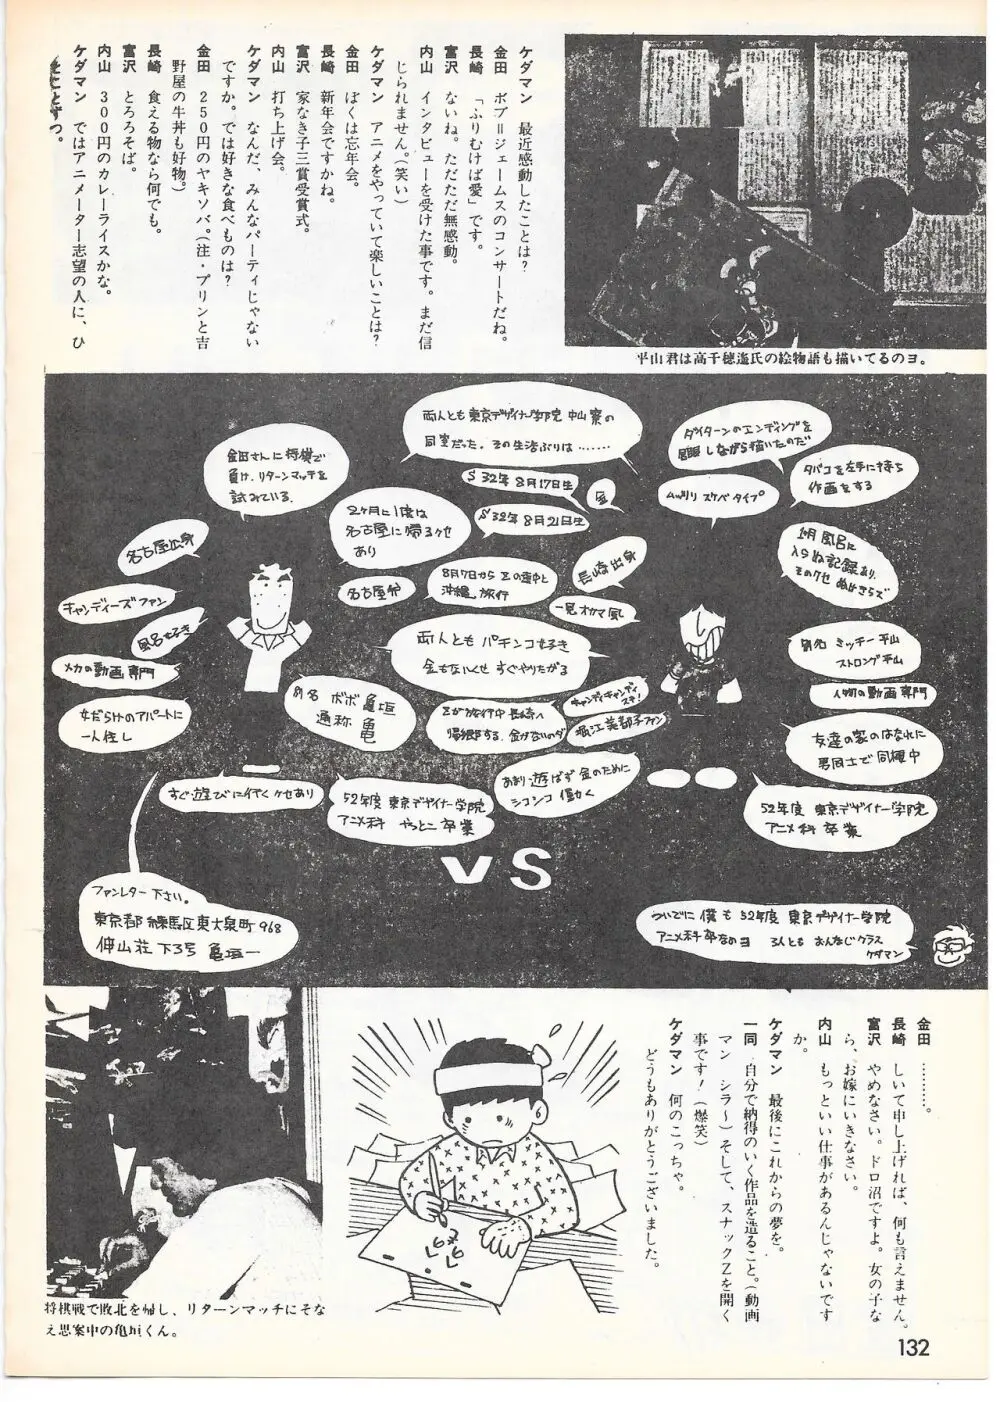 THE ANIMATOR 1 金田伊功特集号 127ページ